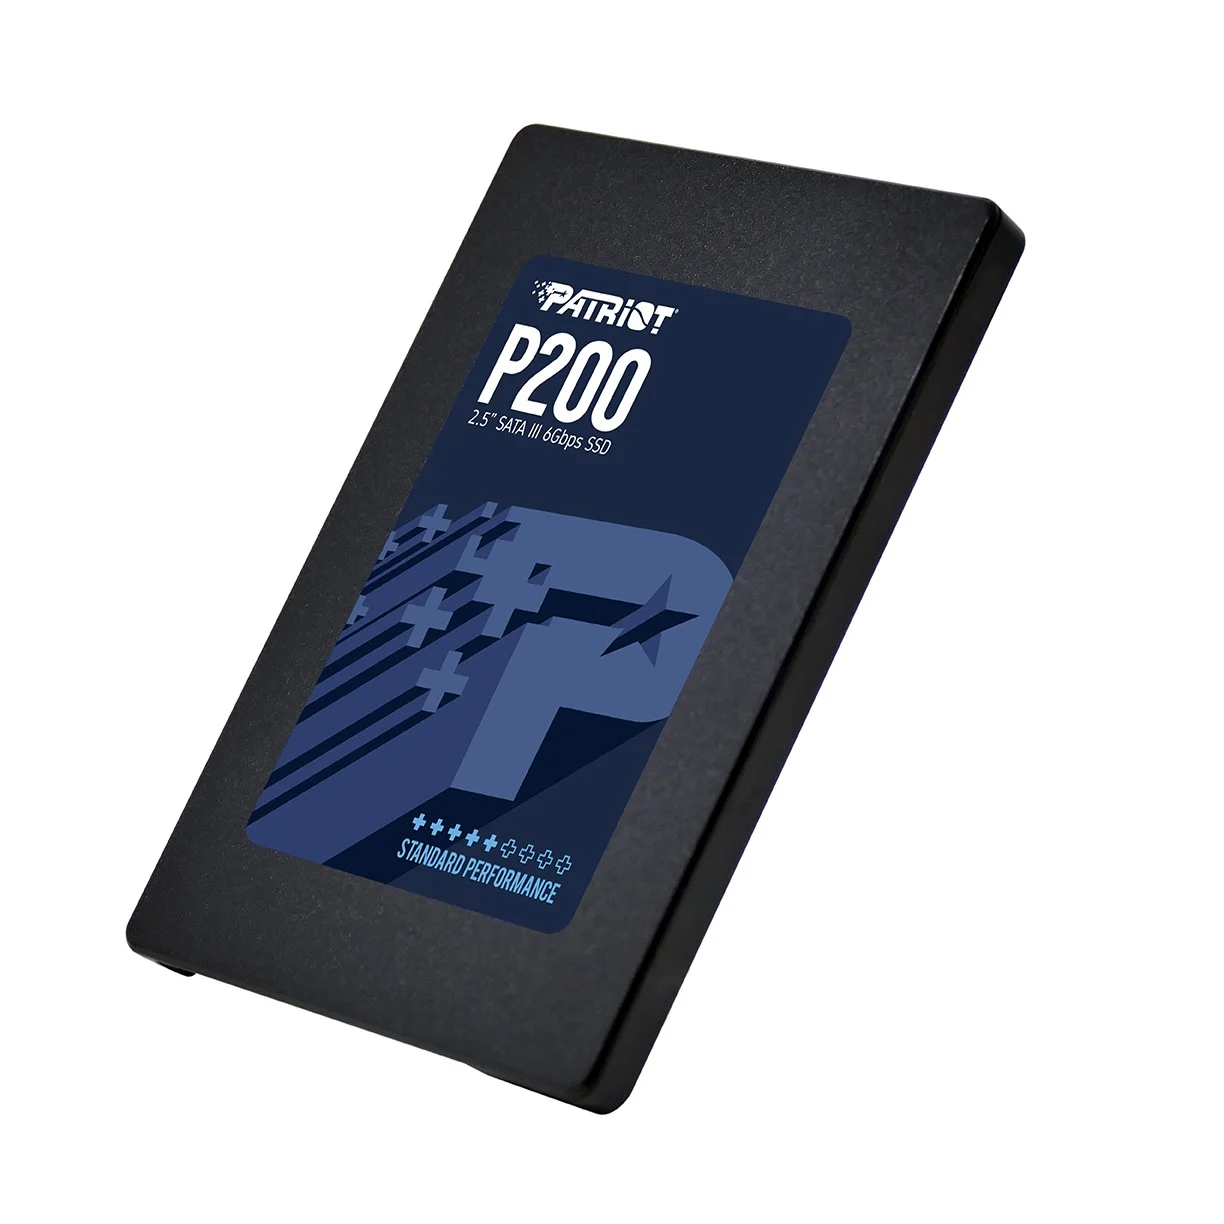 PATRIOT анонсировала выпуск новых SSD P200 - фото 2